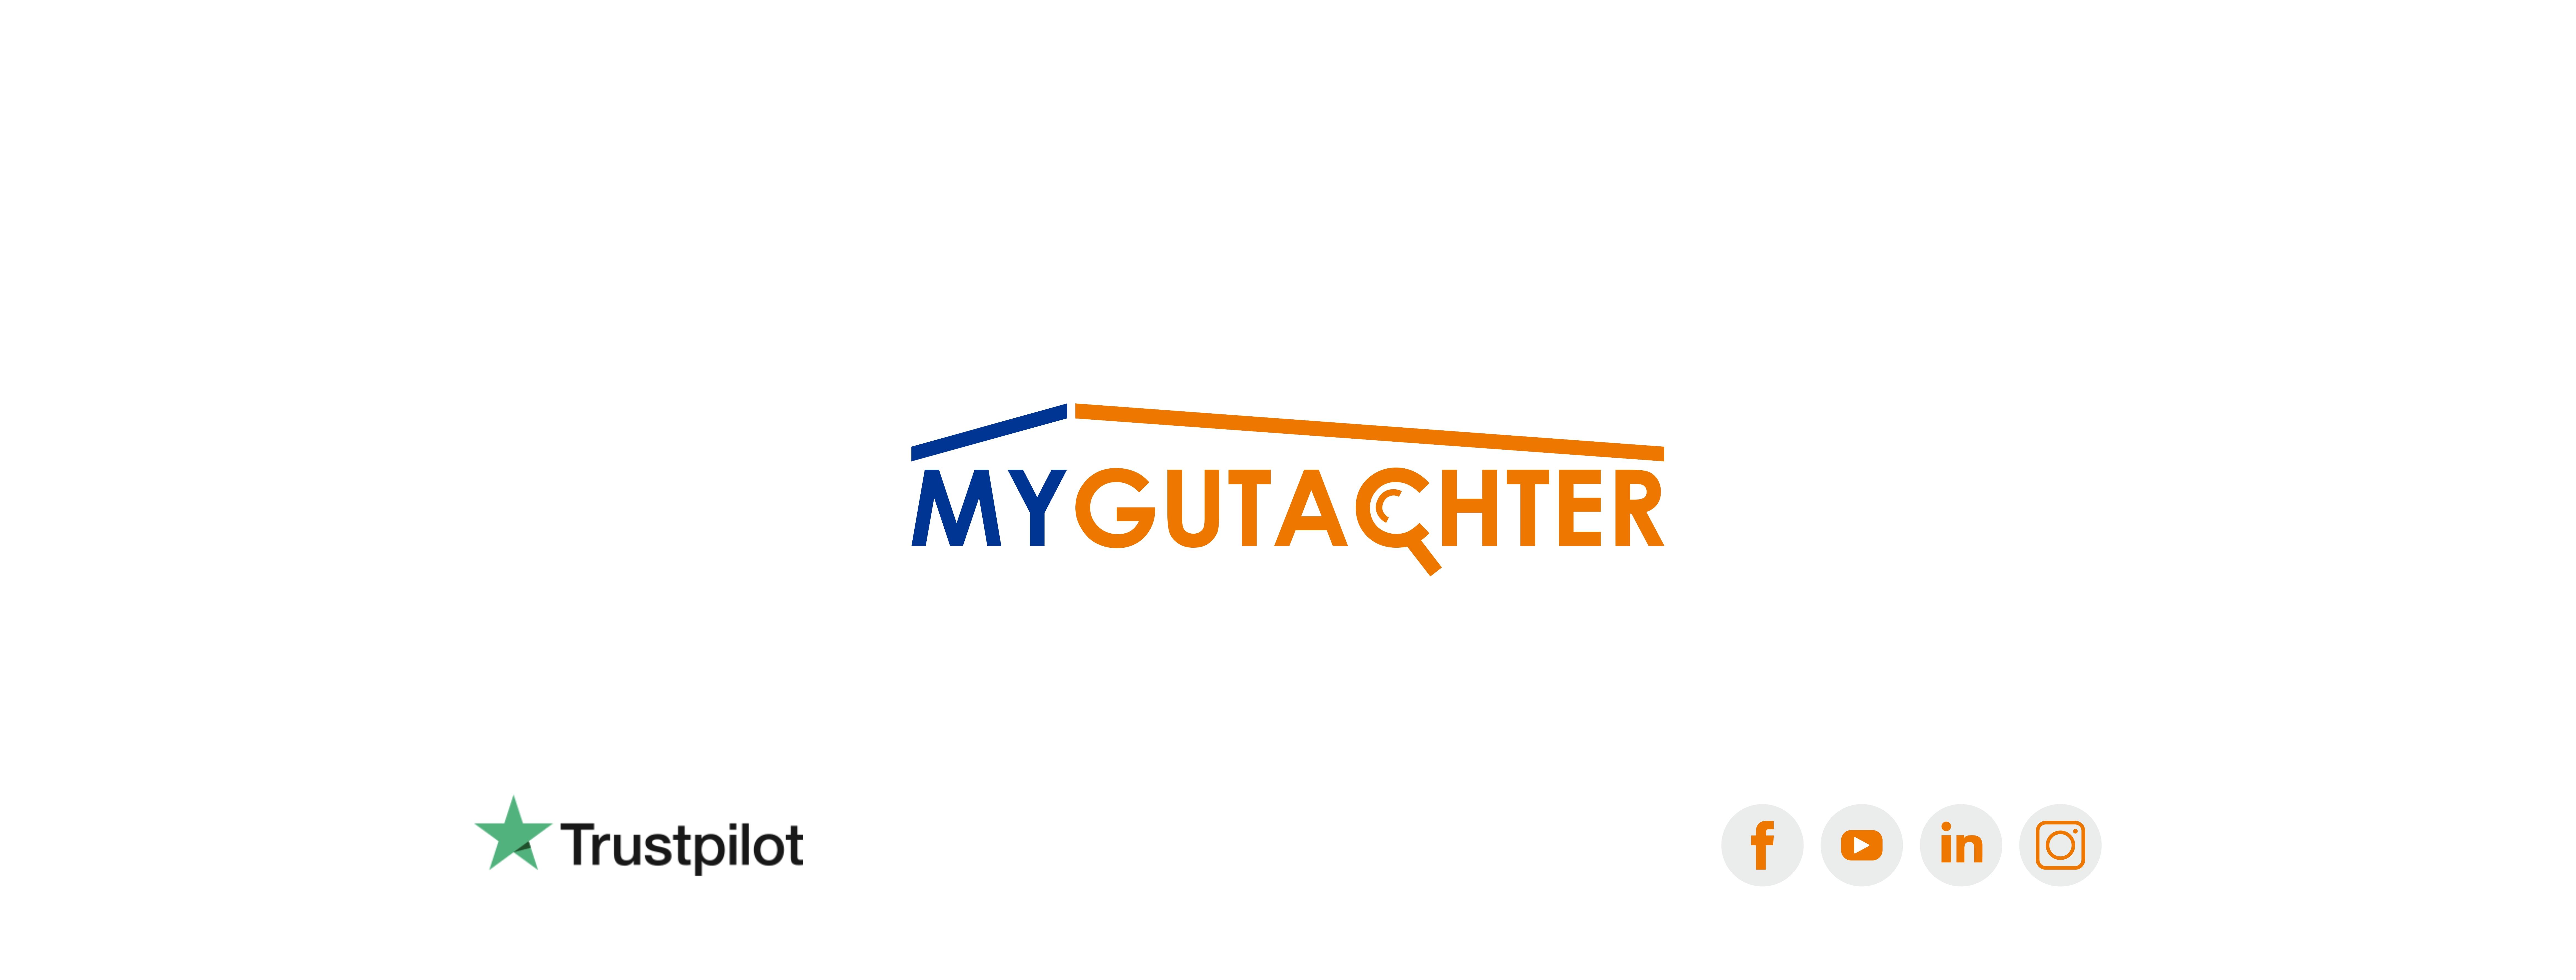 MyGutachter / startup von Herford / Background